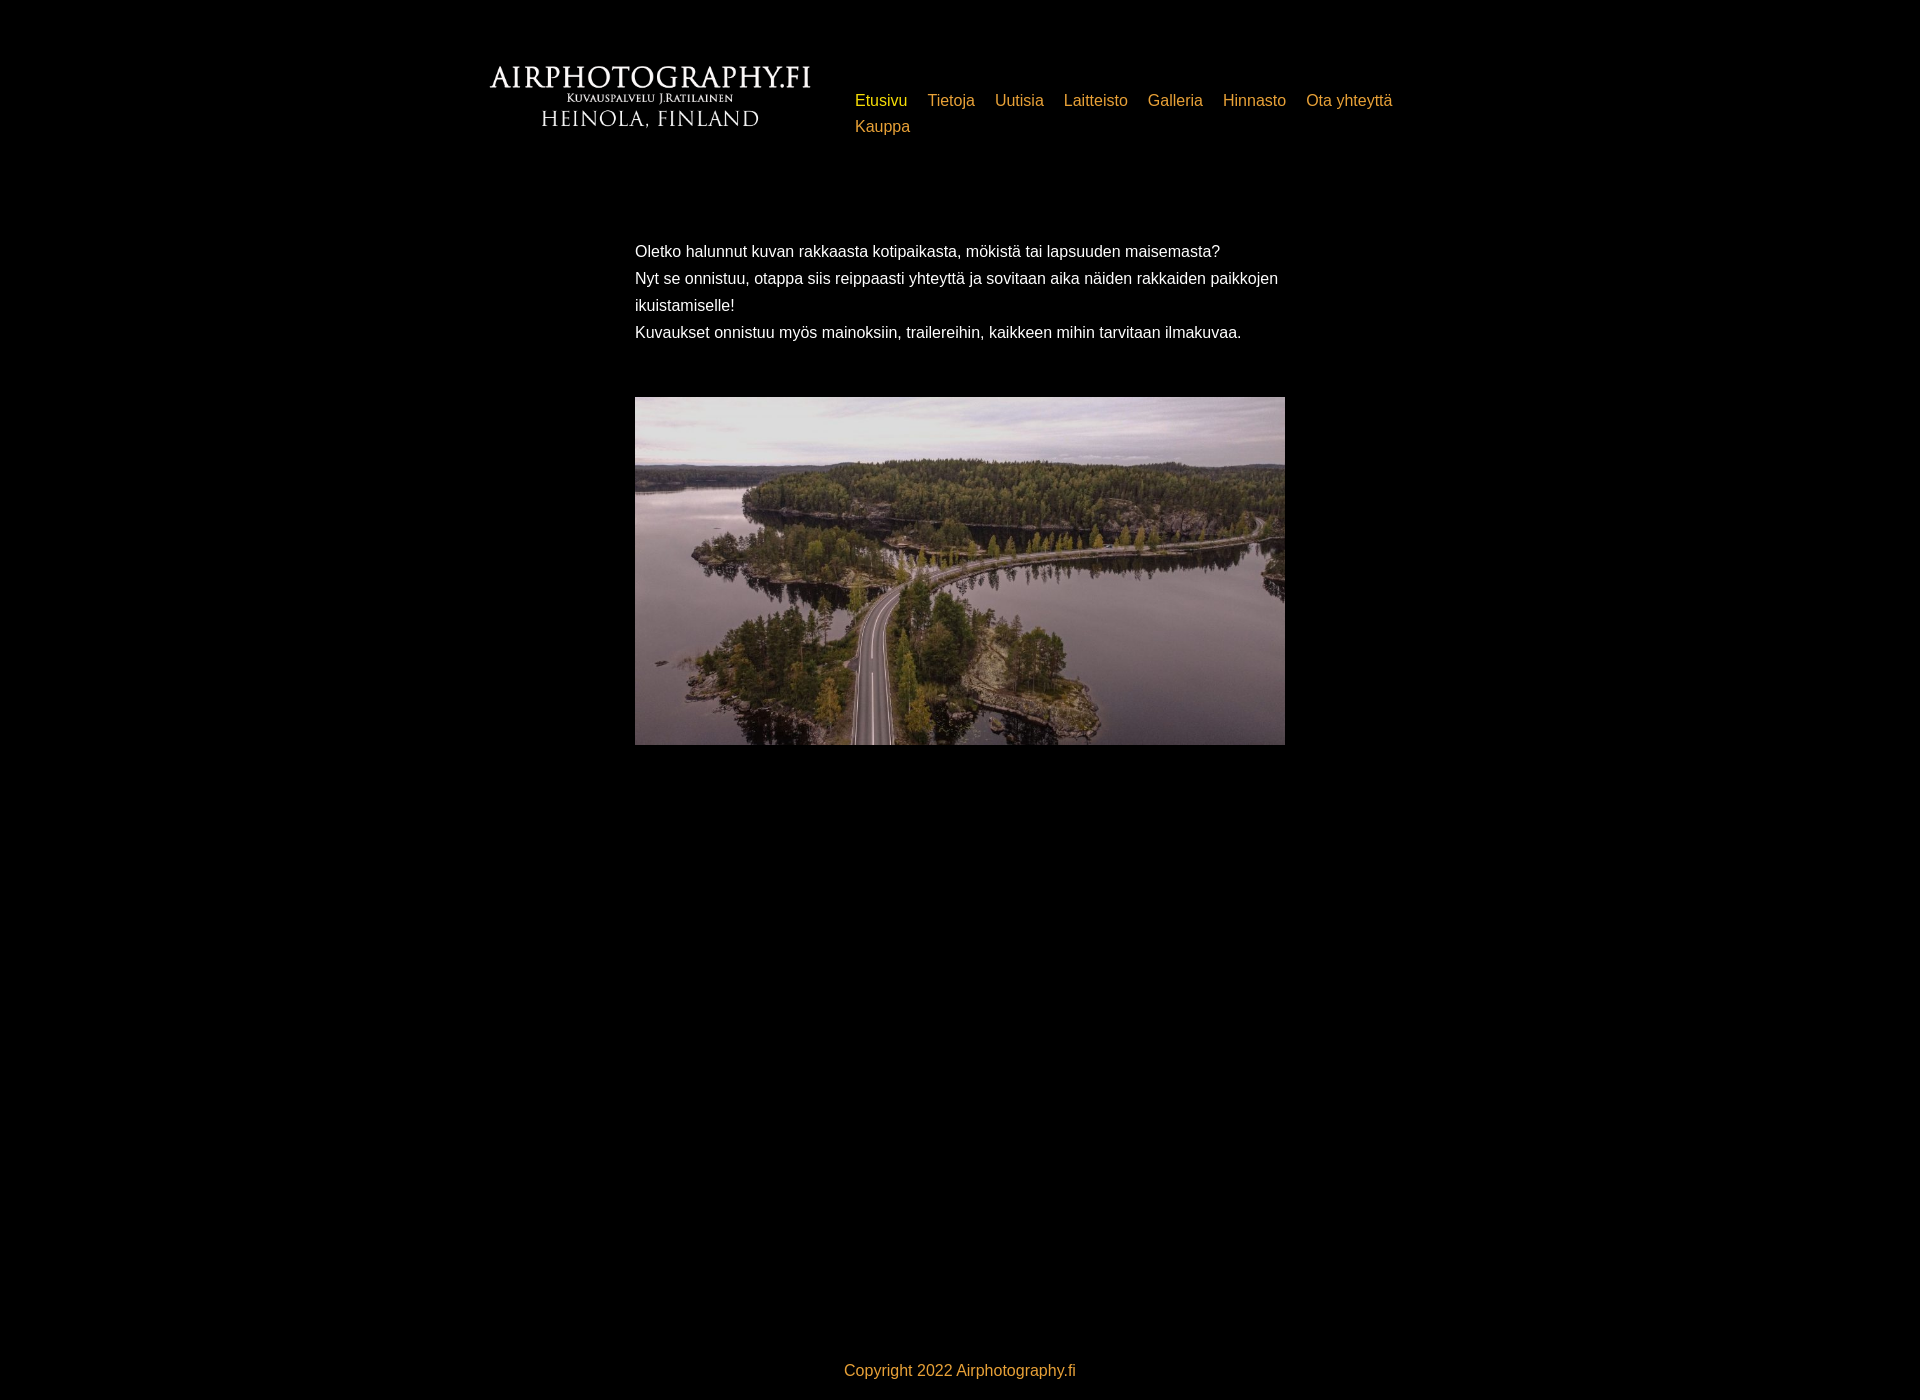 Näyttökuva airphotography.fi